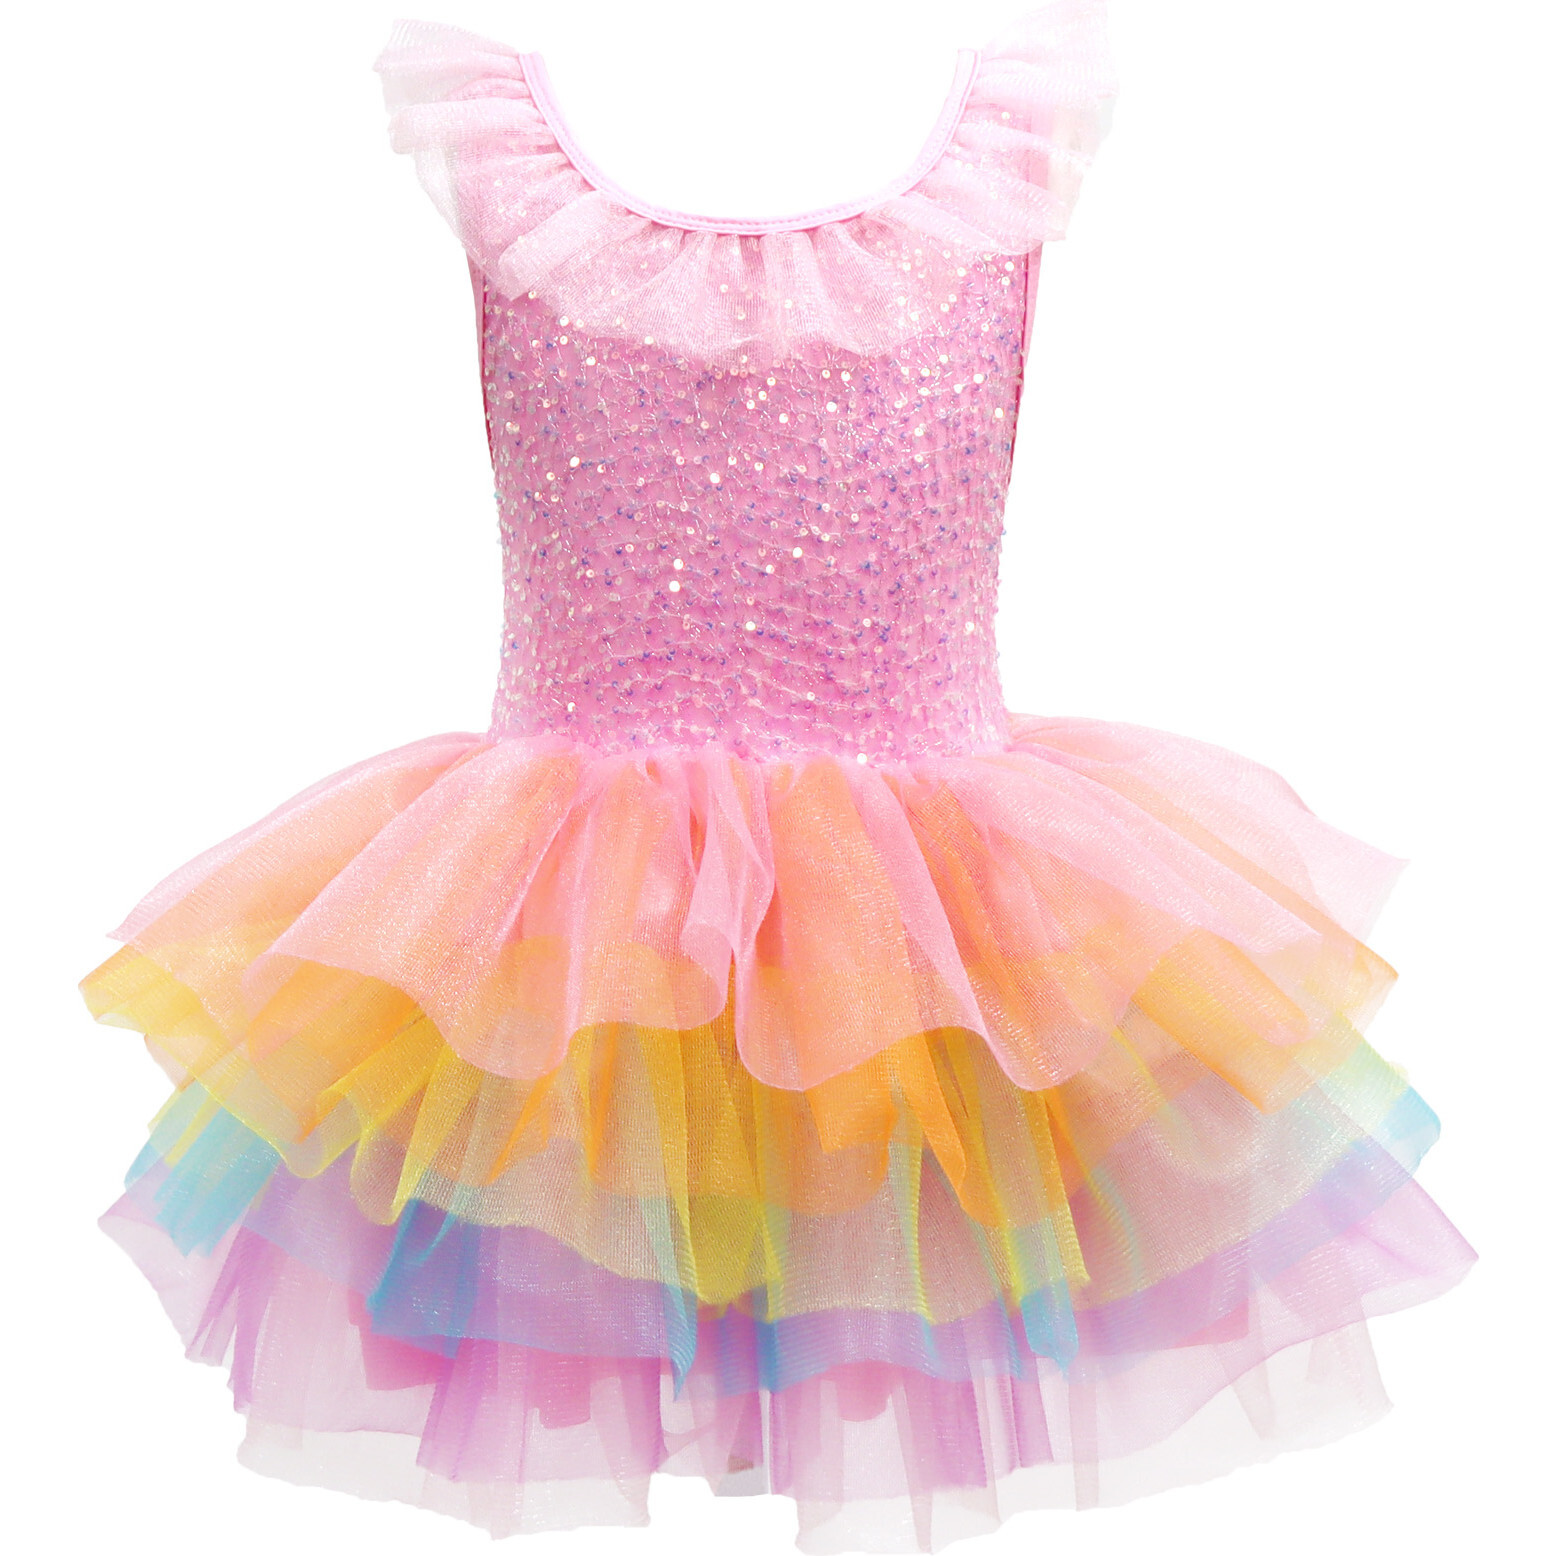 Allegra - Rainbow tulle dress